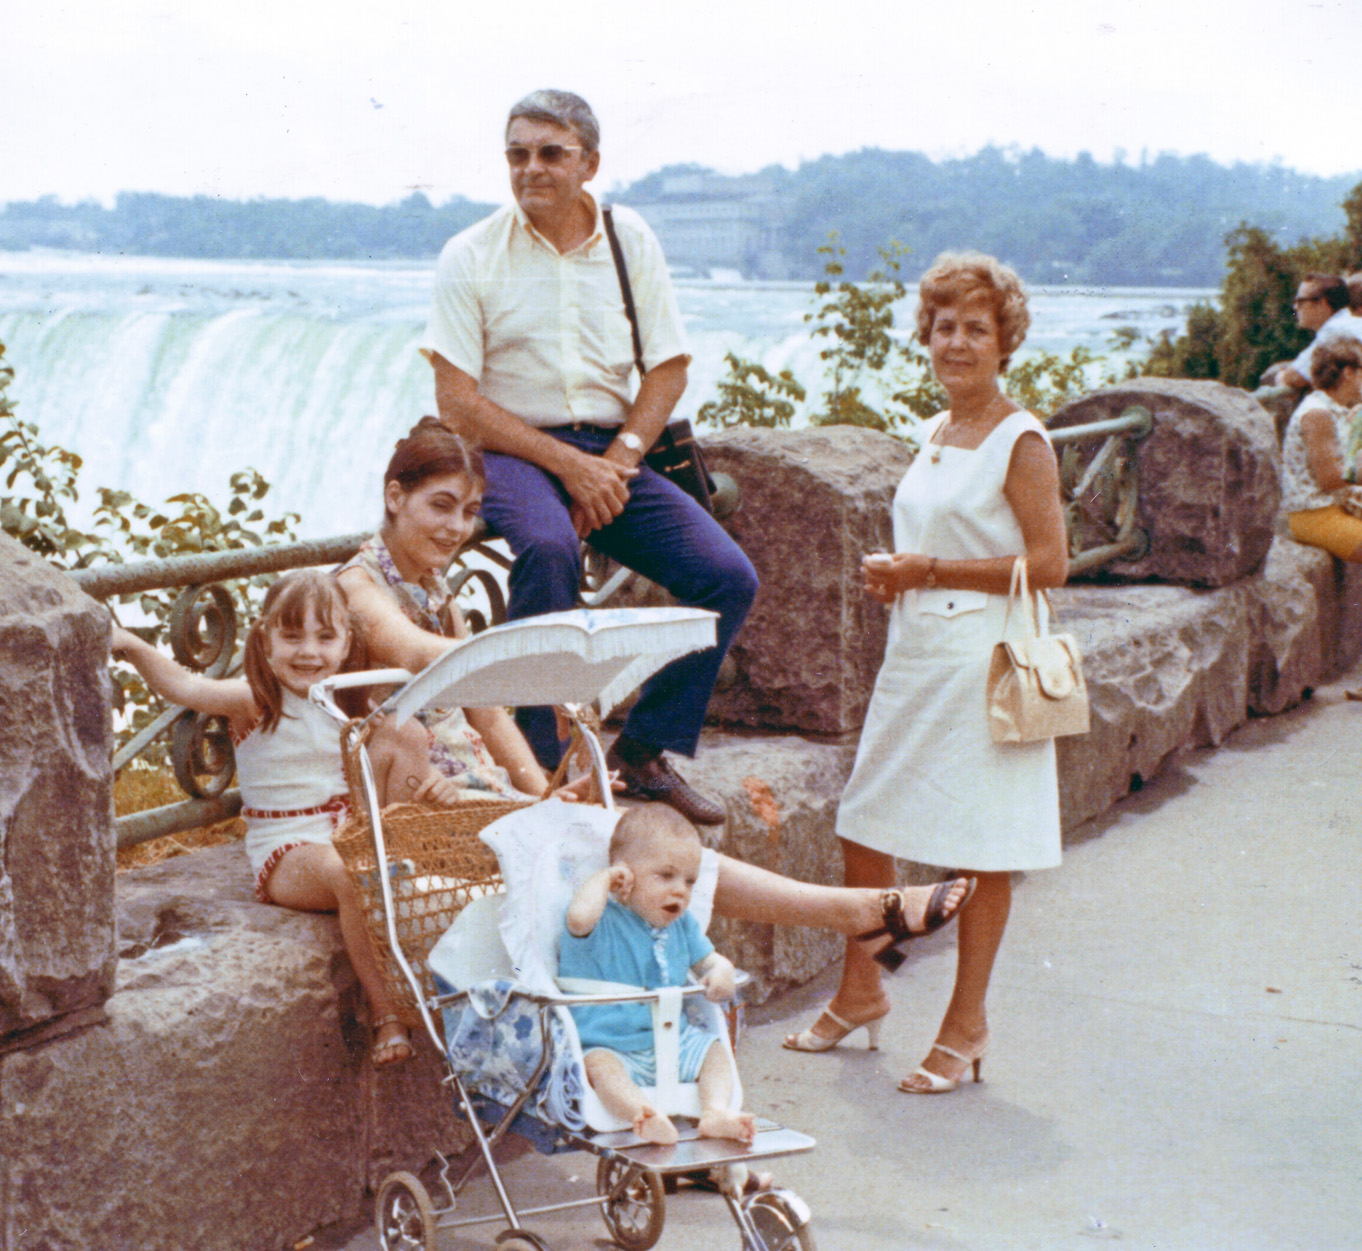 My family visiting Niagara Falls, Ontario, July 1970. View full size.